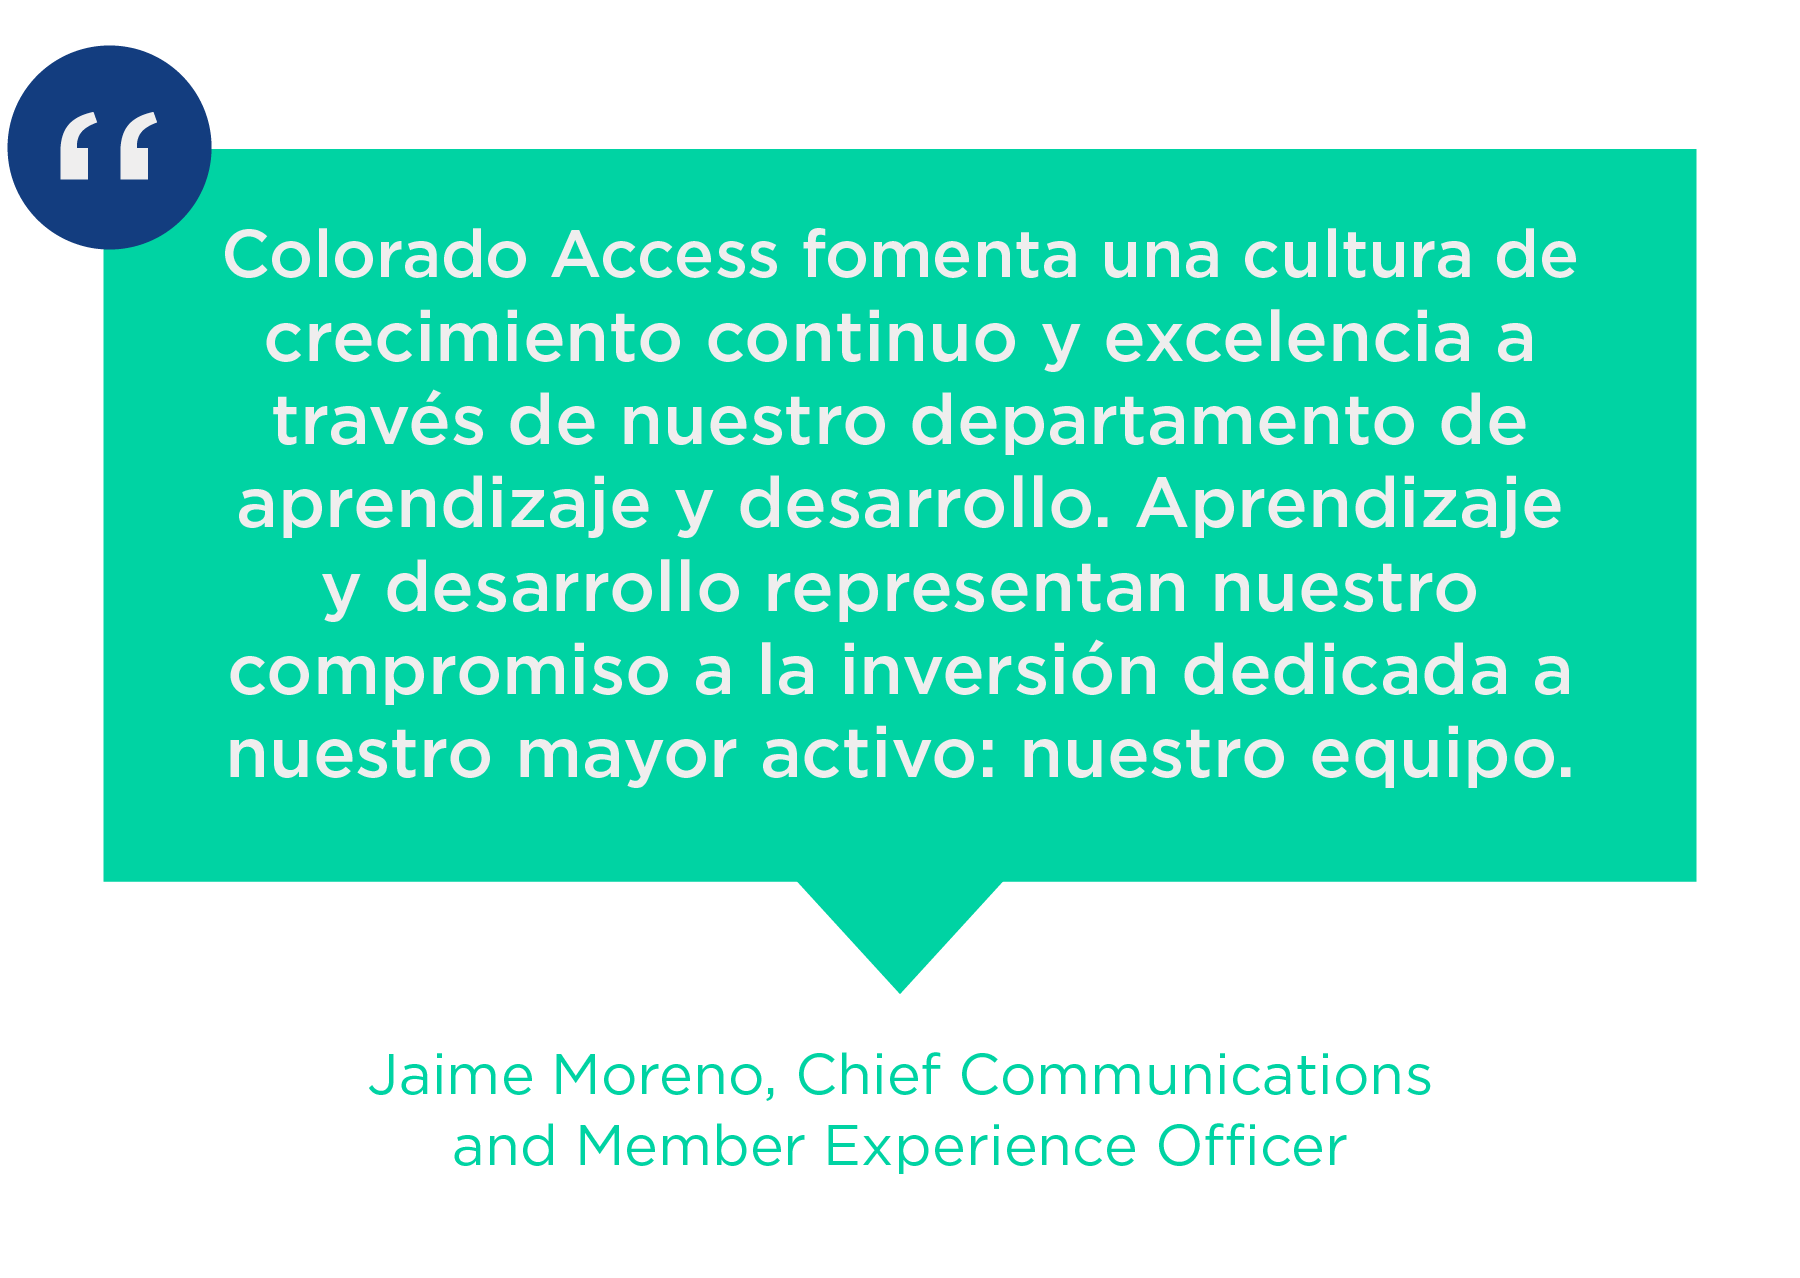 Colorado Access ji bo kultura ku berdewam dike û gerîdeyên nû yên departmanên aprendizaje y desarrollo ye. Aprendizaje y desarrollo nûnerê nuestro compromiso a la inversión dedicada a nuestro mayor activo: nuestro equipo